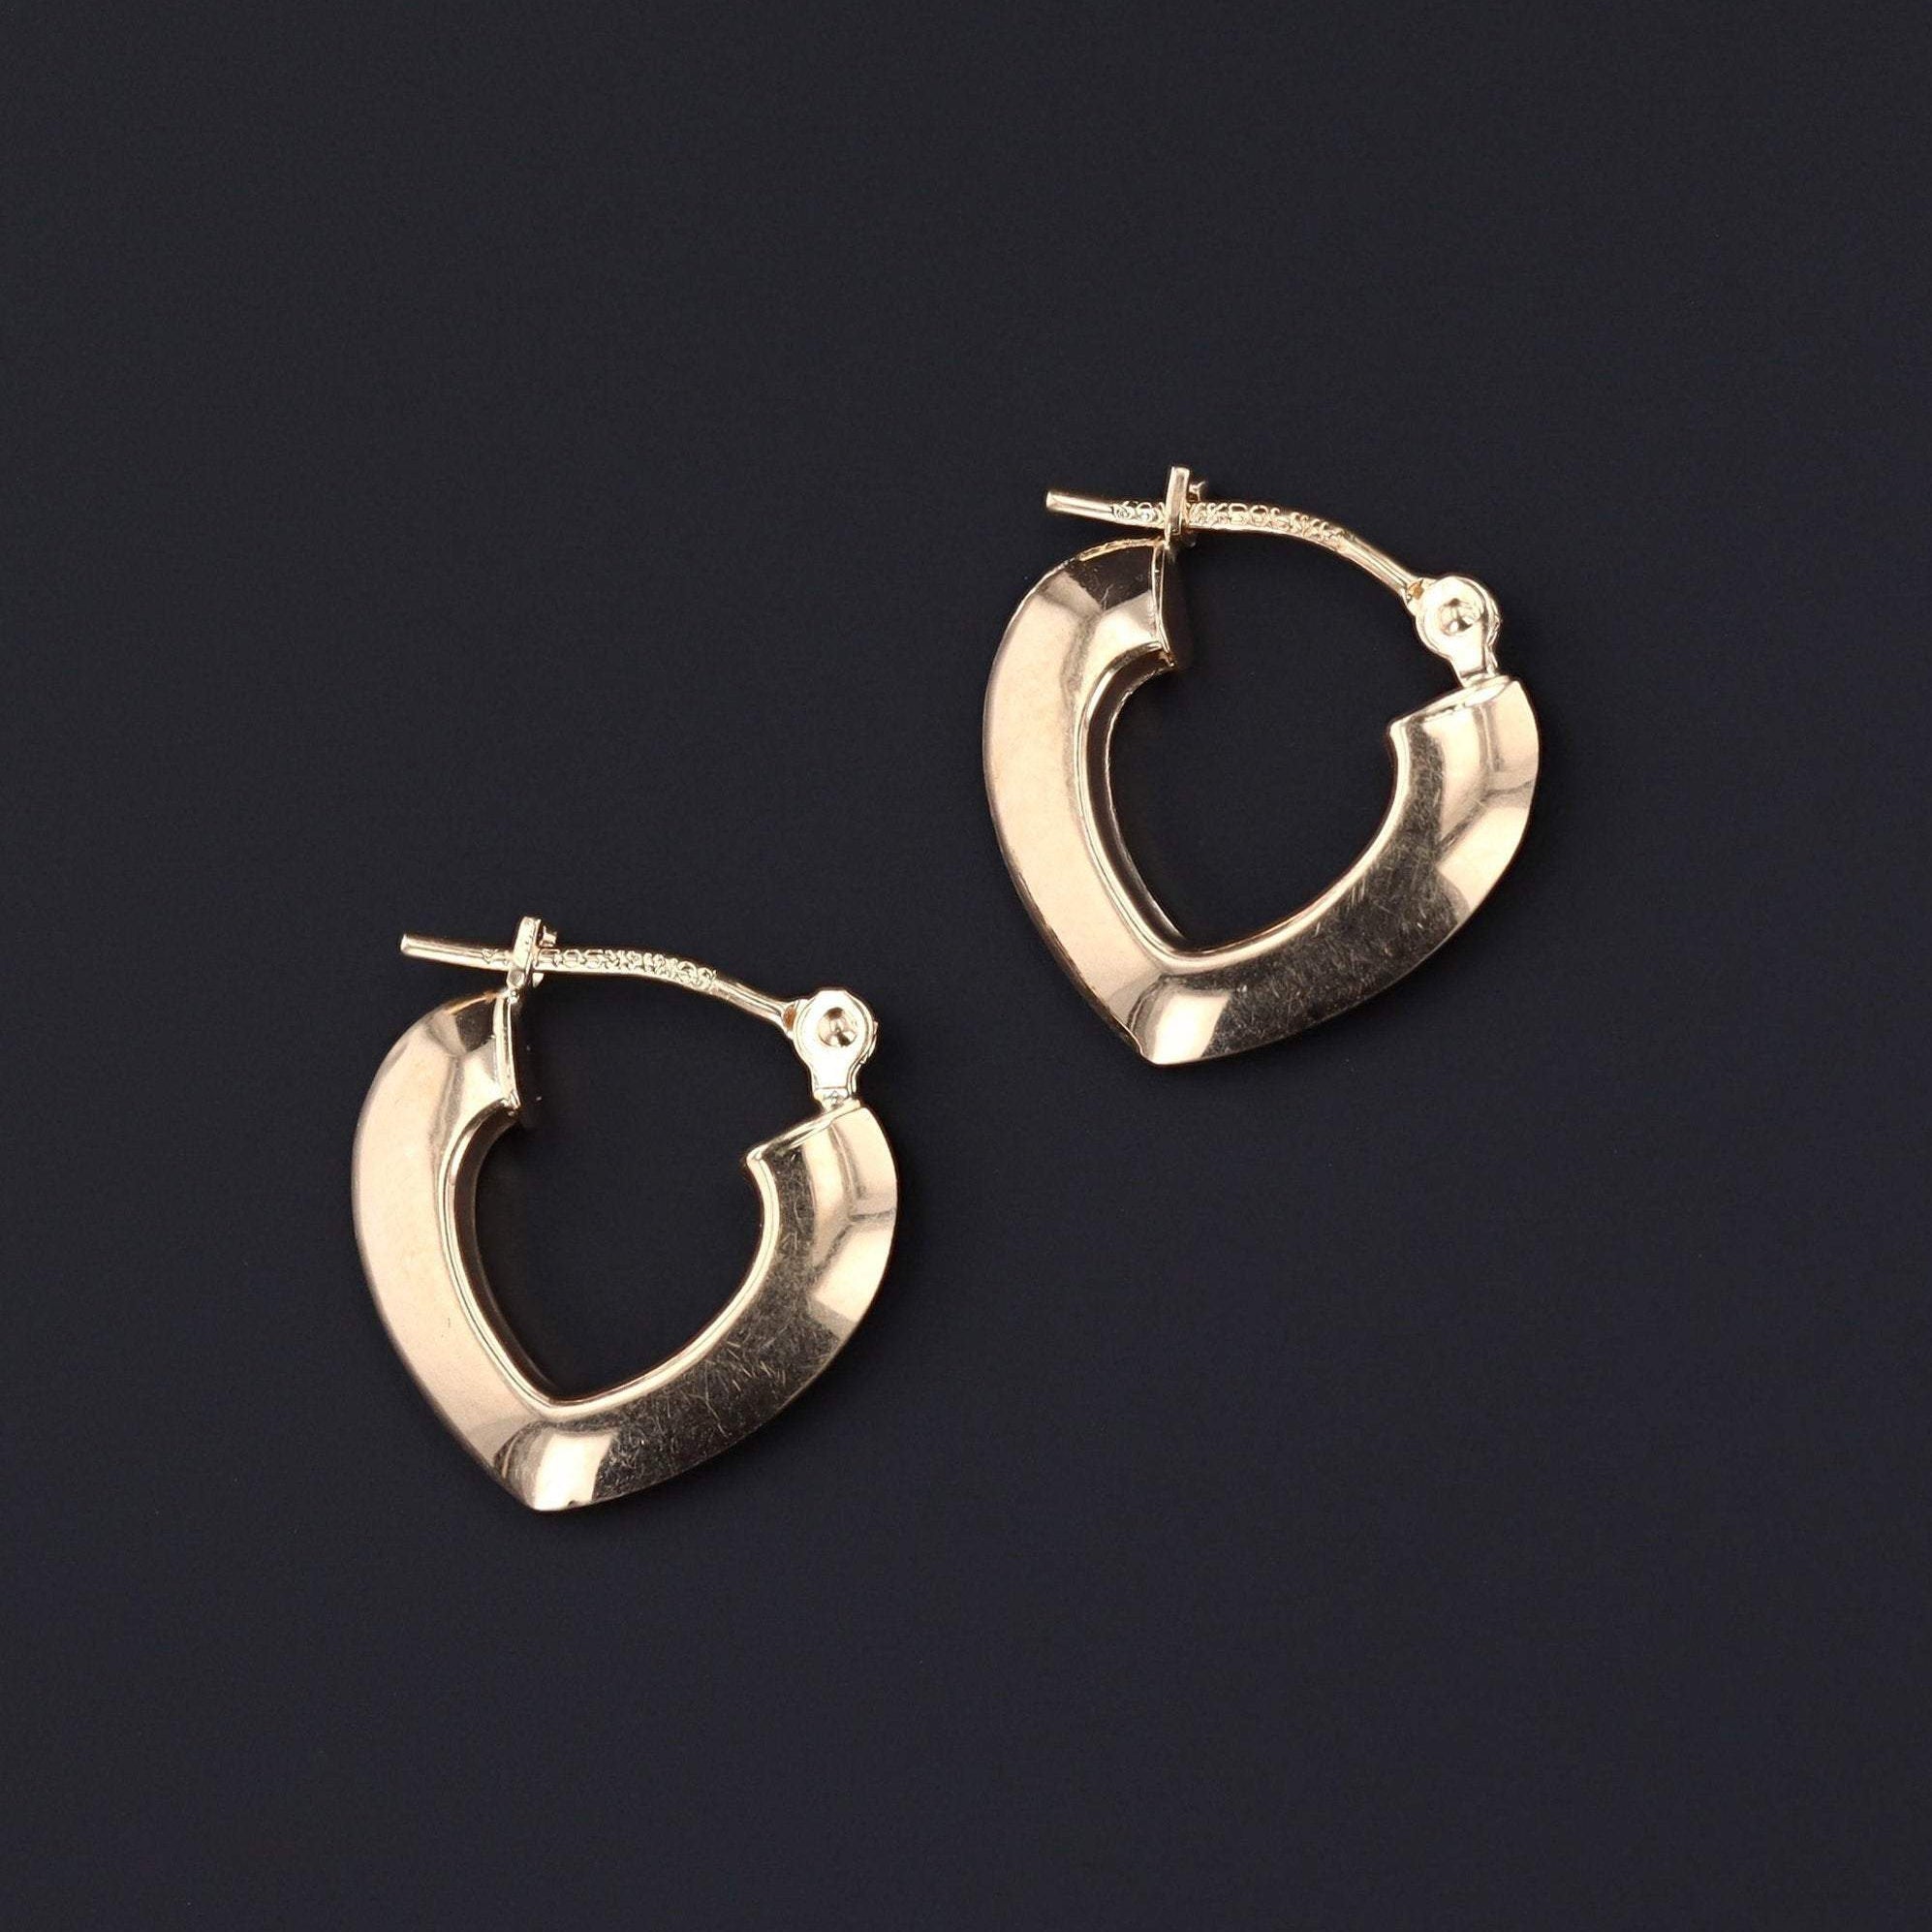 Vintage Gold Hoop Earrings | 14k Gold Hoop Earrings | 14k Gold Earrings | Small Hoop Earrings